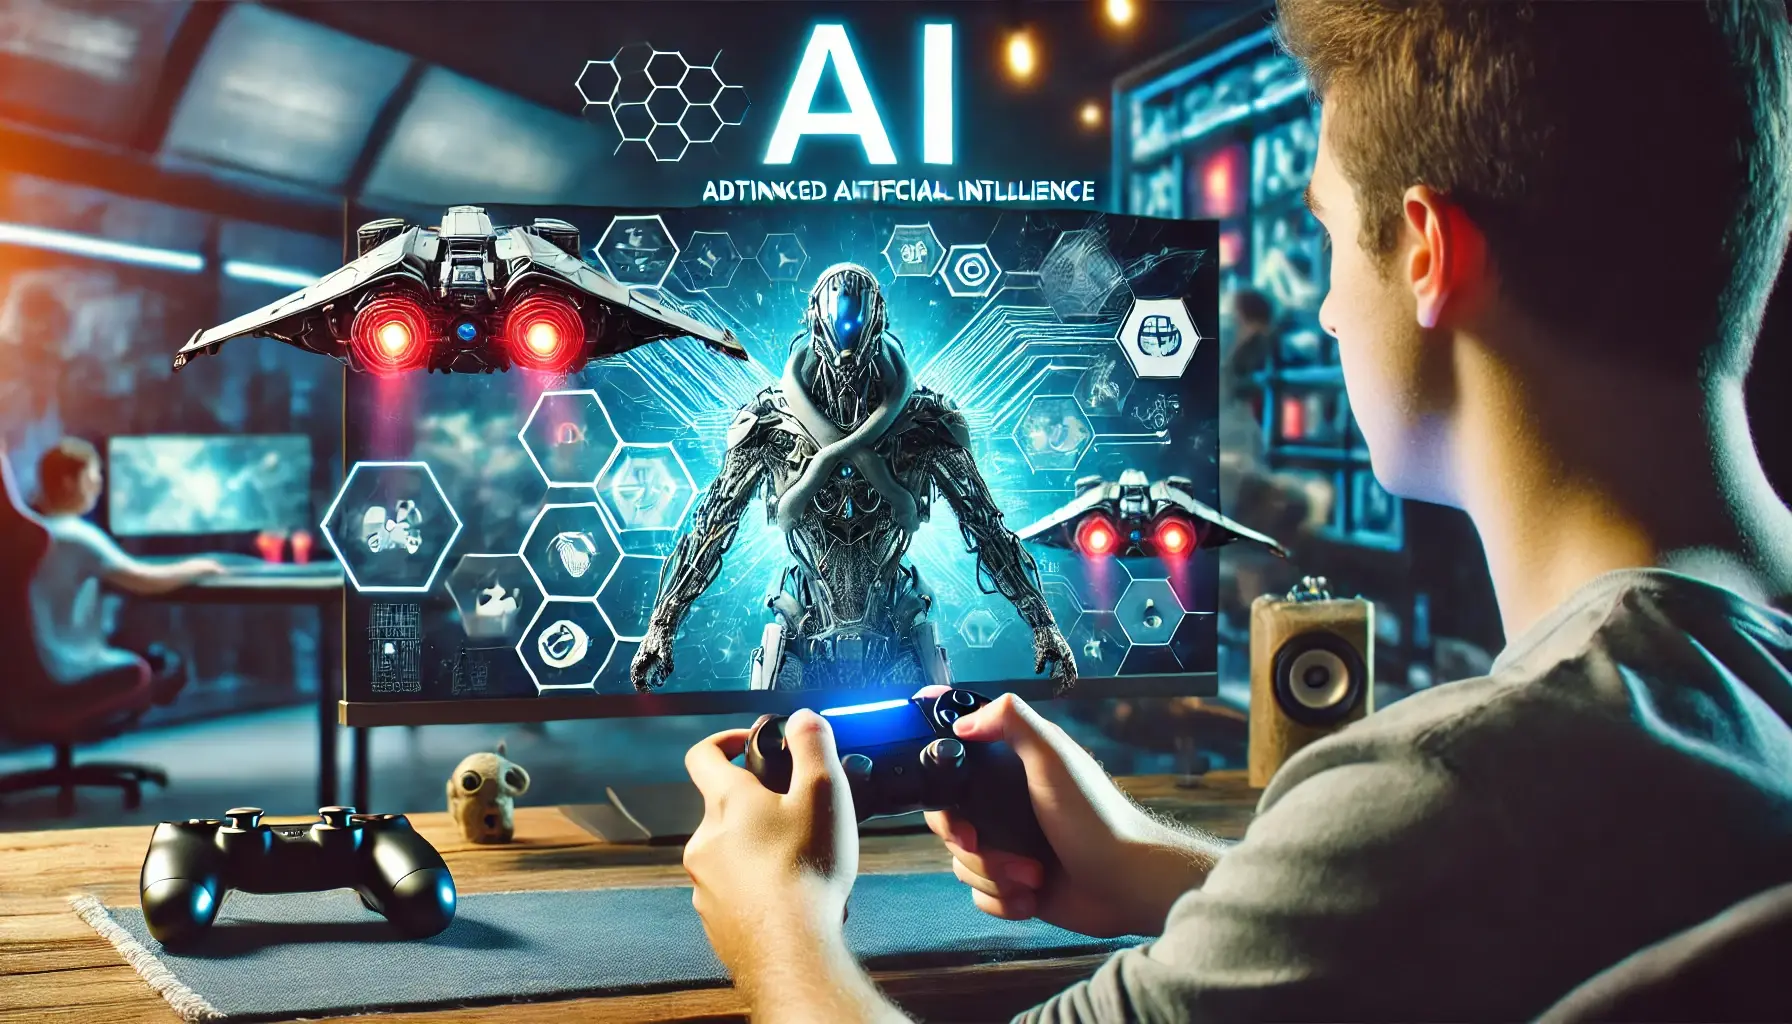 Existem diversos jogos eletrônicos que se destacam pela utilização de inteligência artificial avançada. Um exemplo é o jogo 'The Last of Us', onde os inimigos possuem comportamentos realistas e se adaptam às ações do jogador, proporcionando uma experiência desafiadora e imersiva.